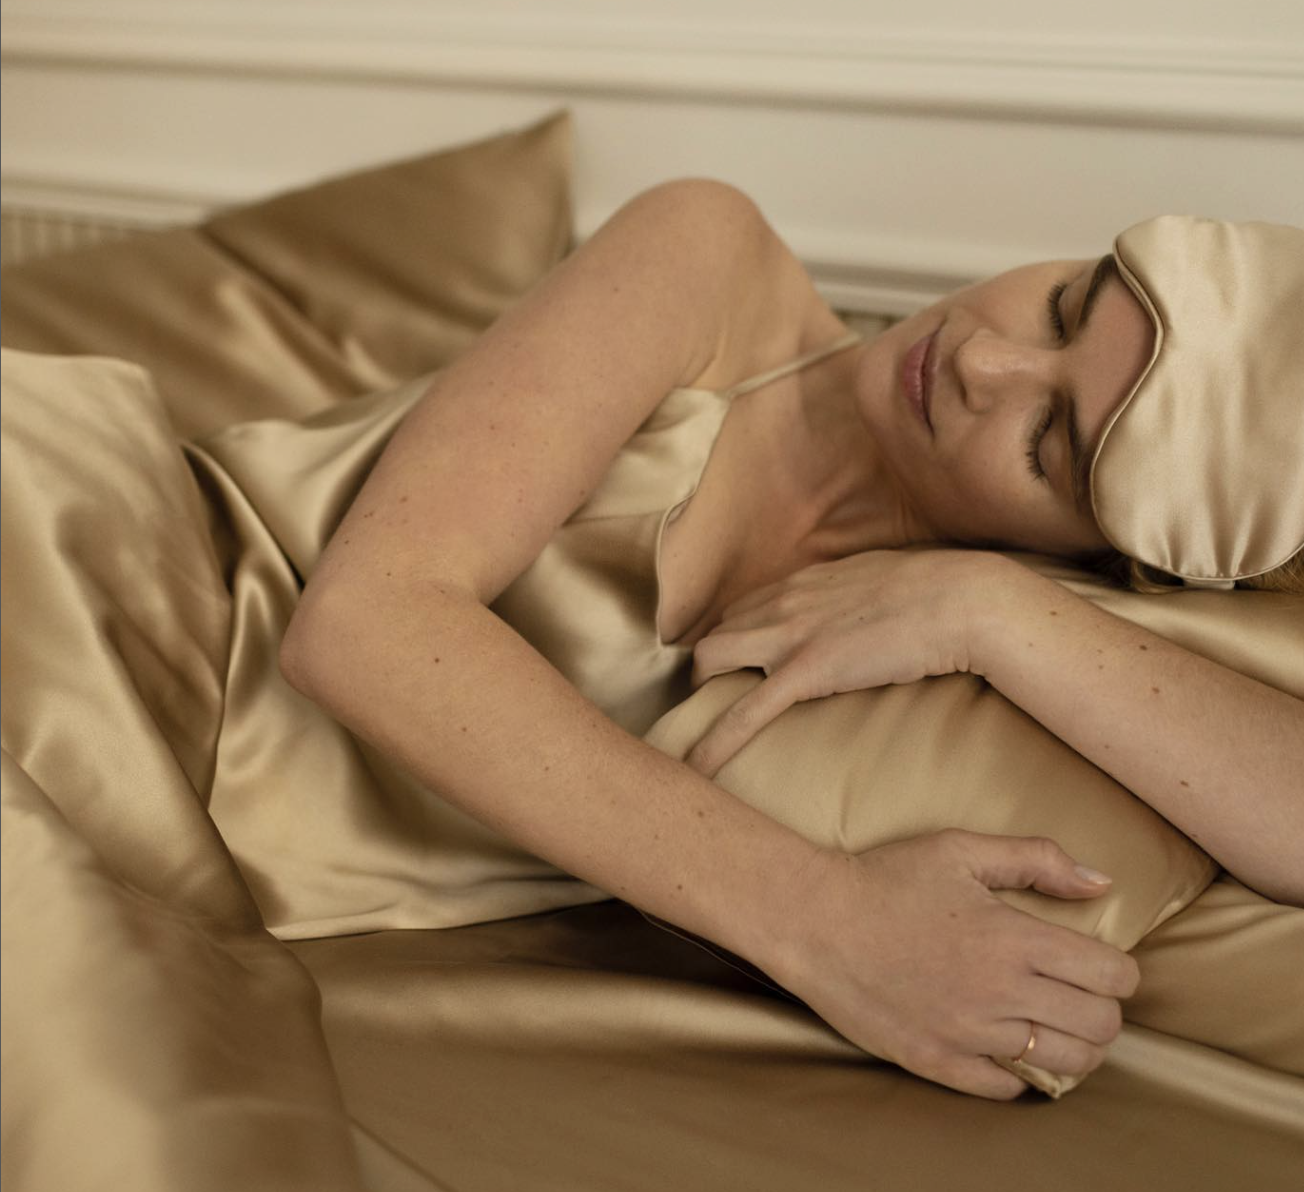 Una startup gallega diseña una almohada que pone fin a las arrugas